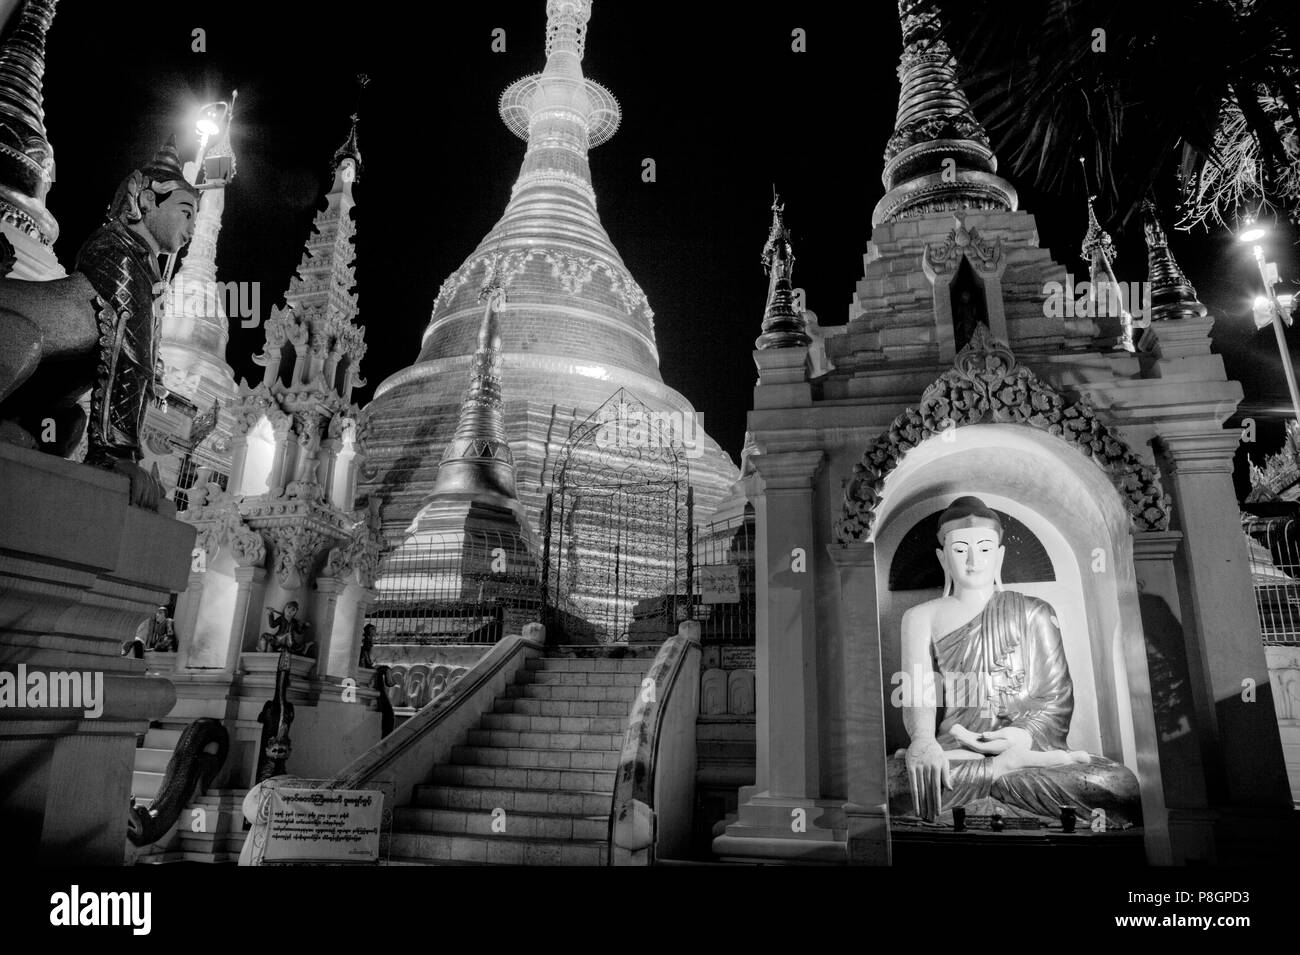 Une statue de Bouddha et le principal ZEDI de la pagode Shwedagon, qui date de 1485 est doré chaque année - Yangon, Myanmar Banque D'Images